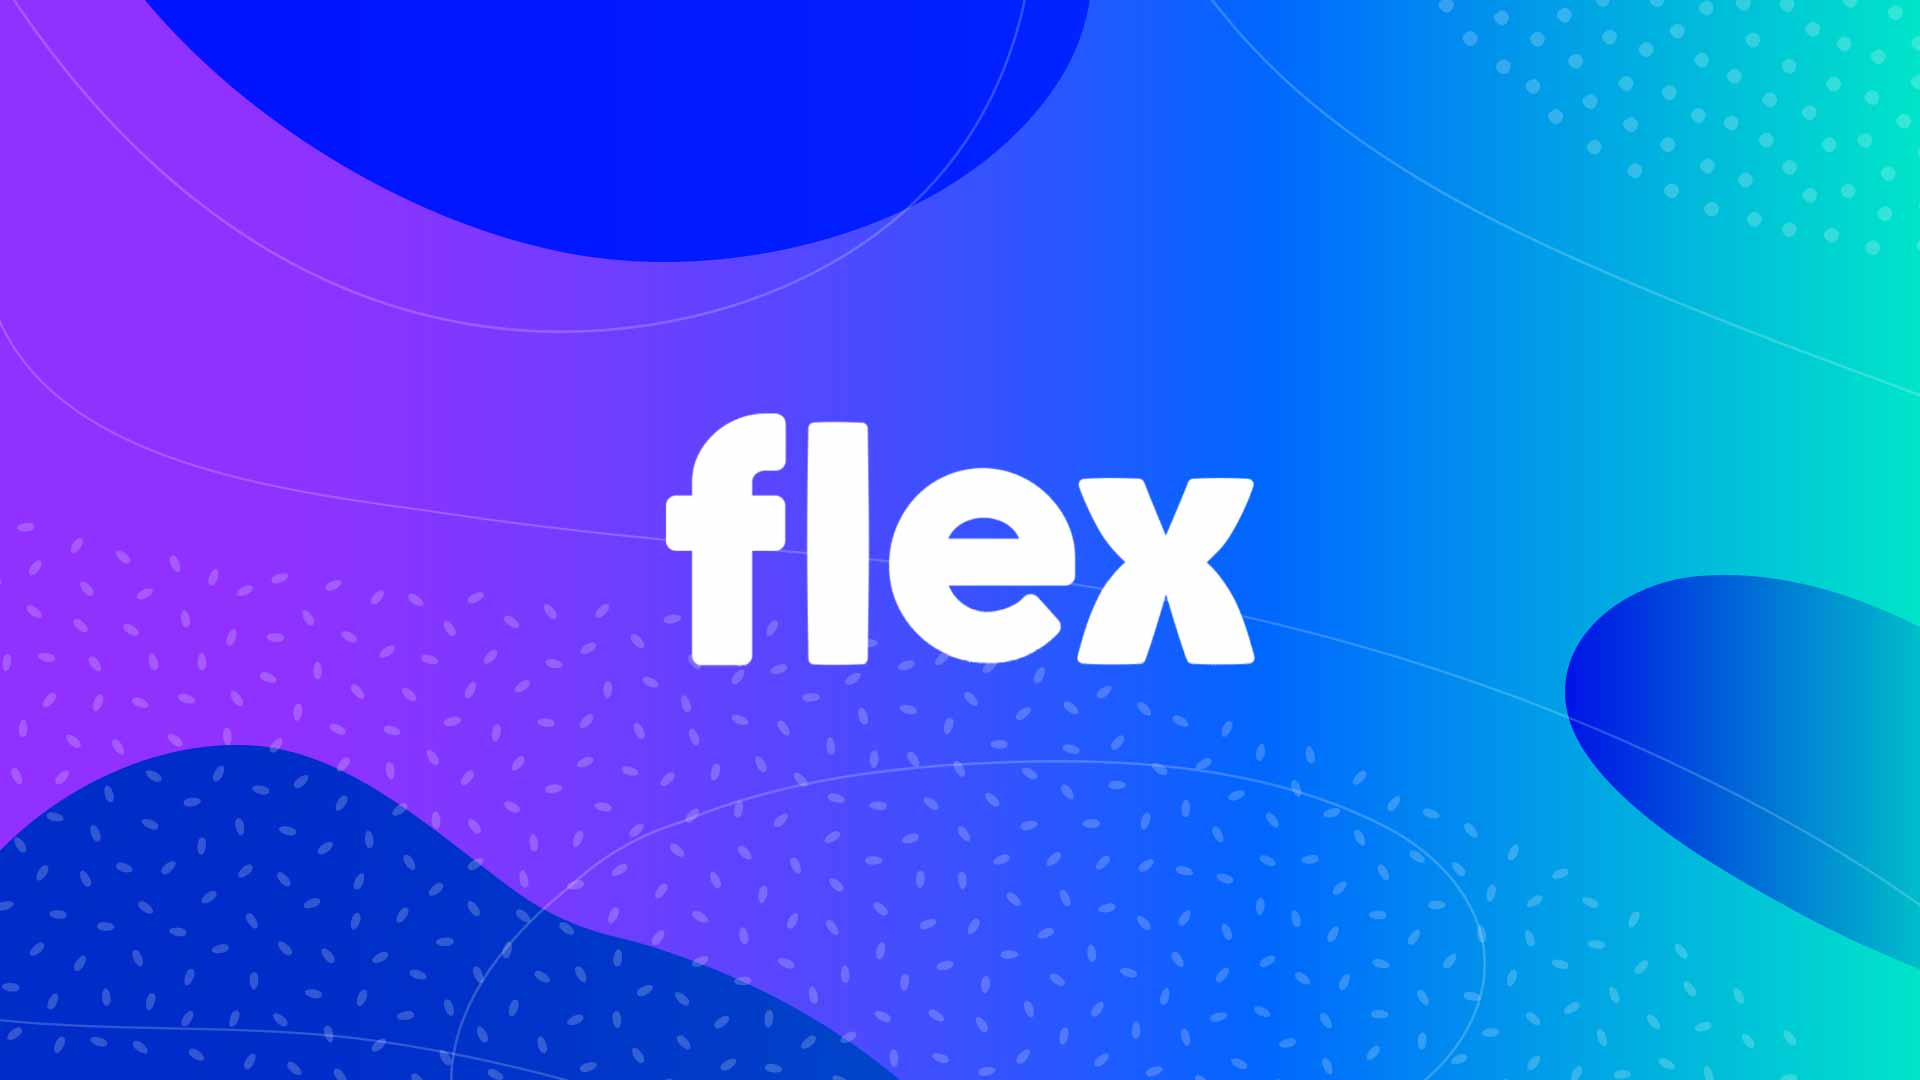 flex-banner-image.jpg